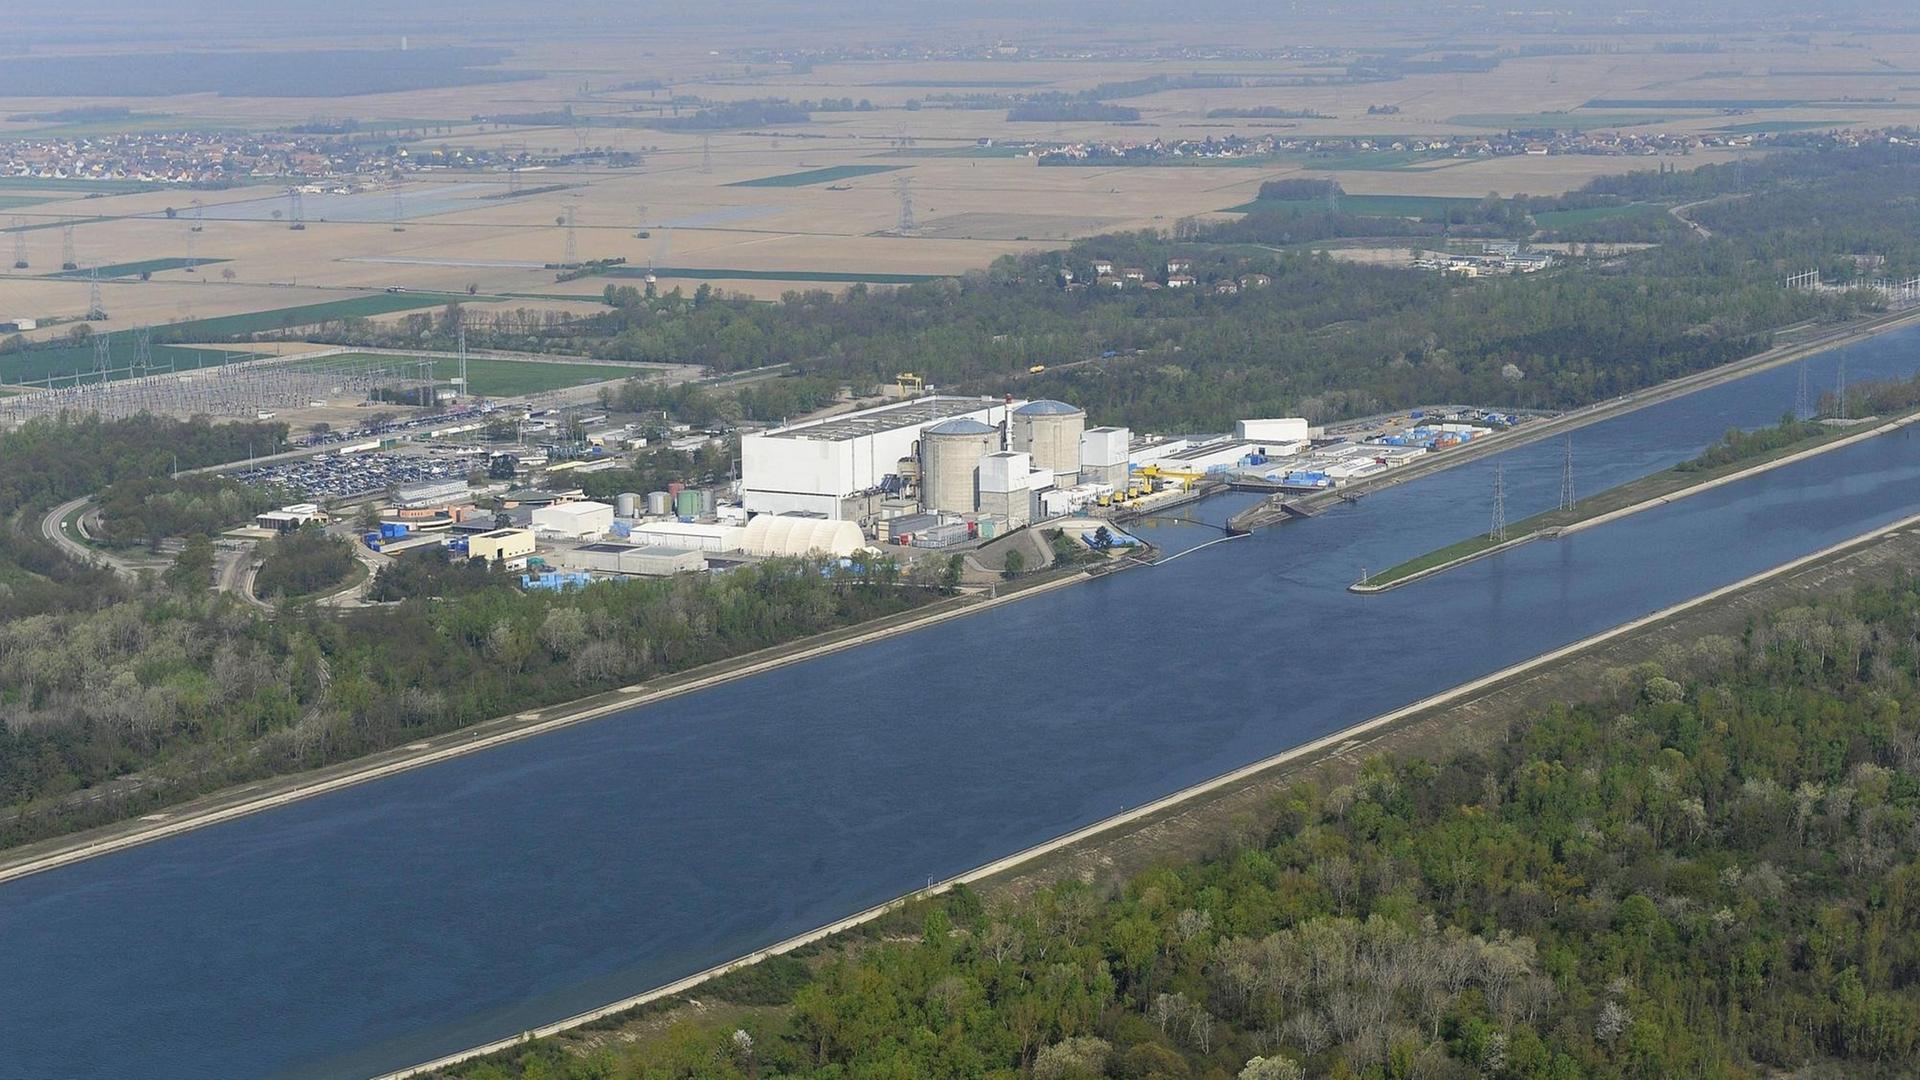 Luftbild des französischen Kernkraftwerks Fessenheim am 08.04.2011. Fessenheim ist das älteste französische AKW.